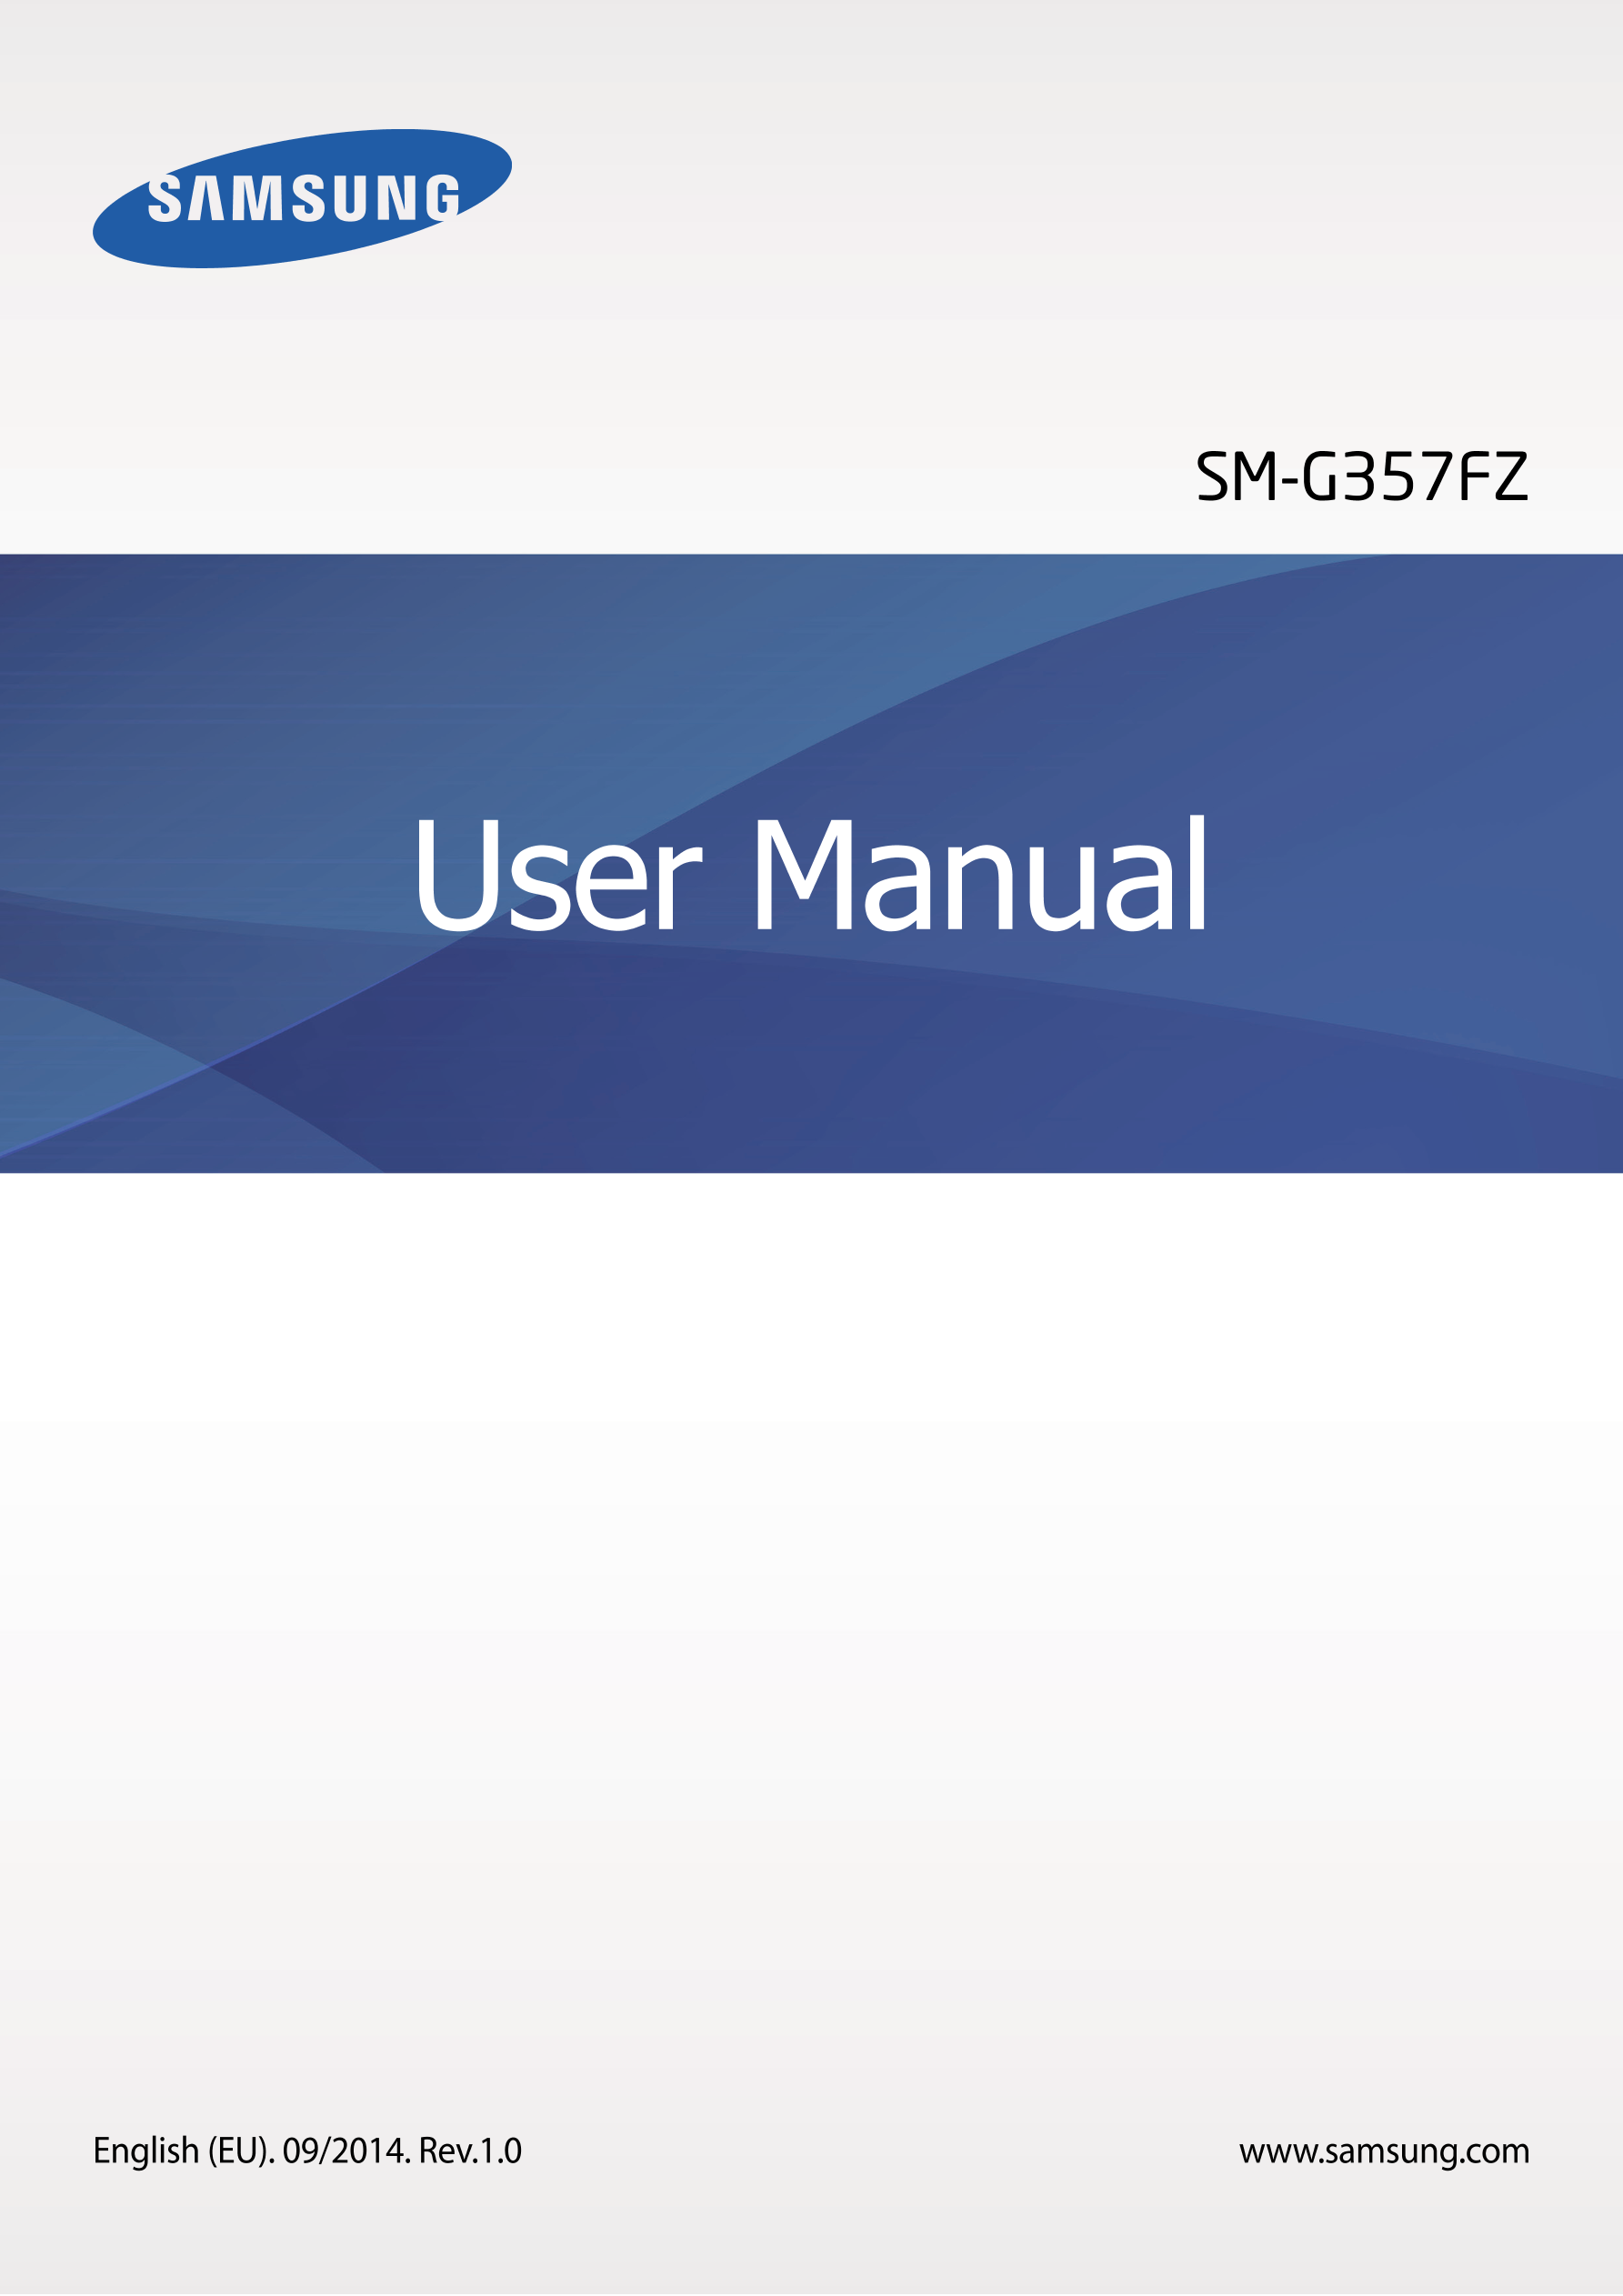 SM-G357FZ
User Manual
English (EU). 09/2014. Rev.1.0 www.samsung.com